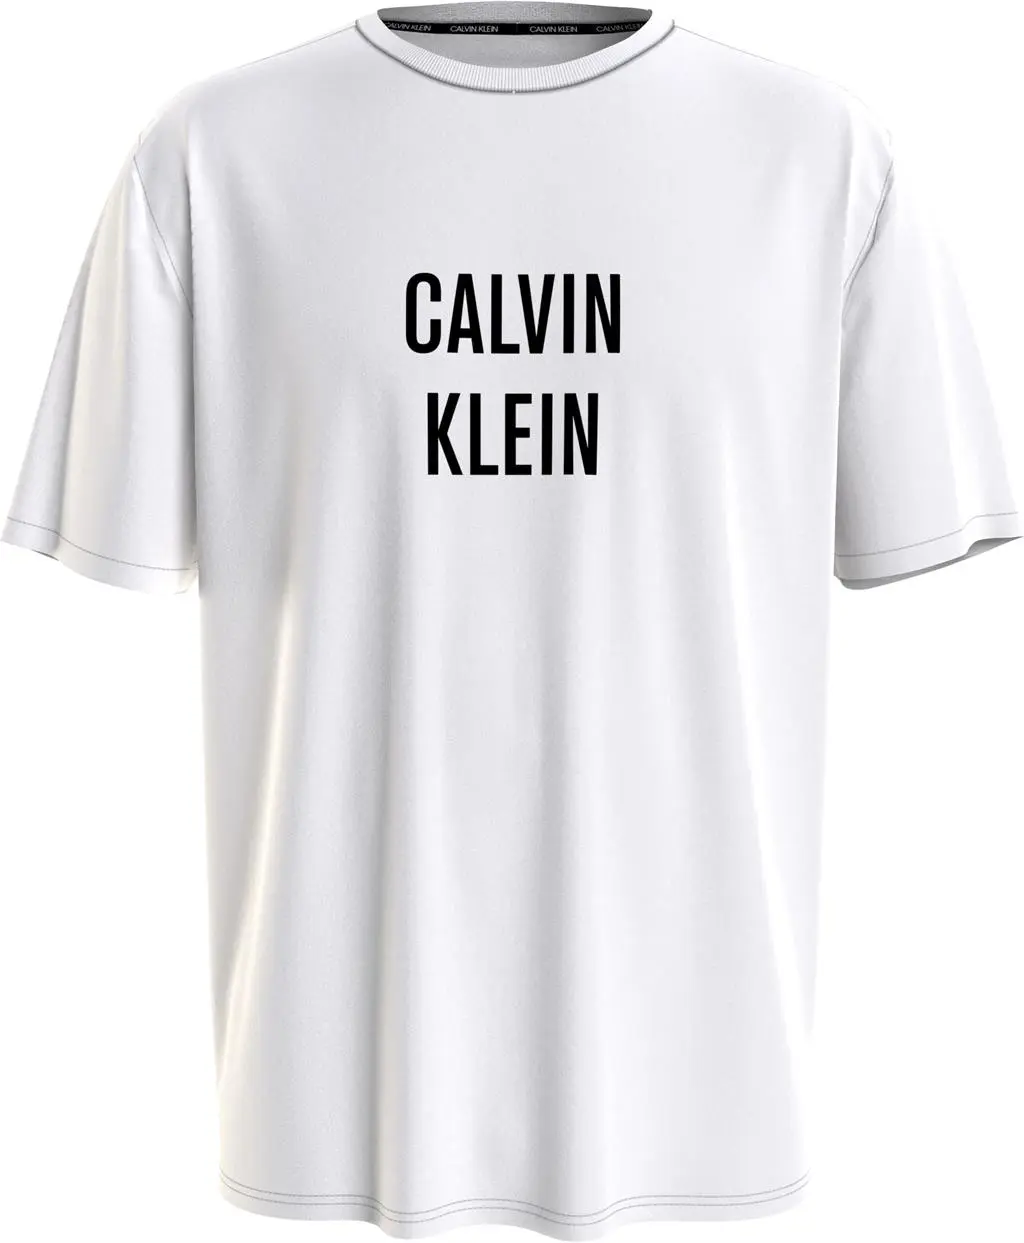 Calvin Klein Relaxed Crew t-shirt dames